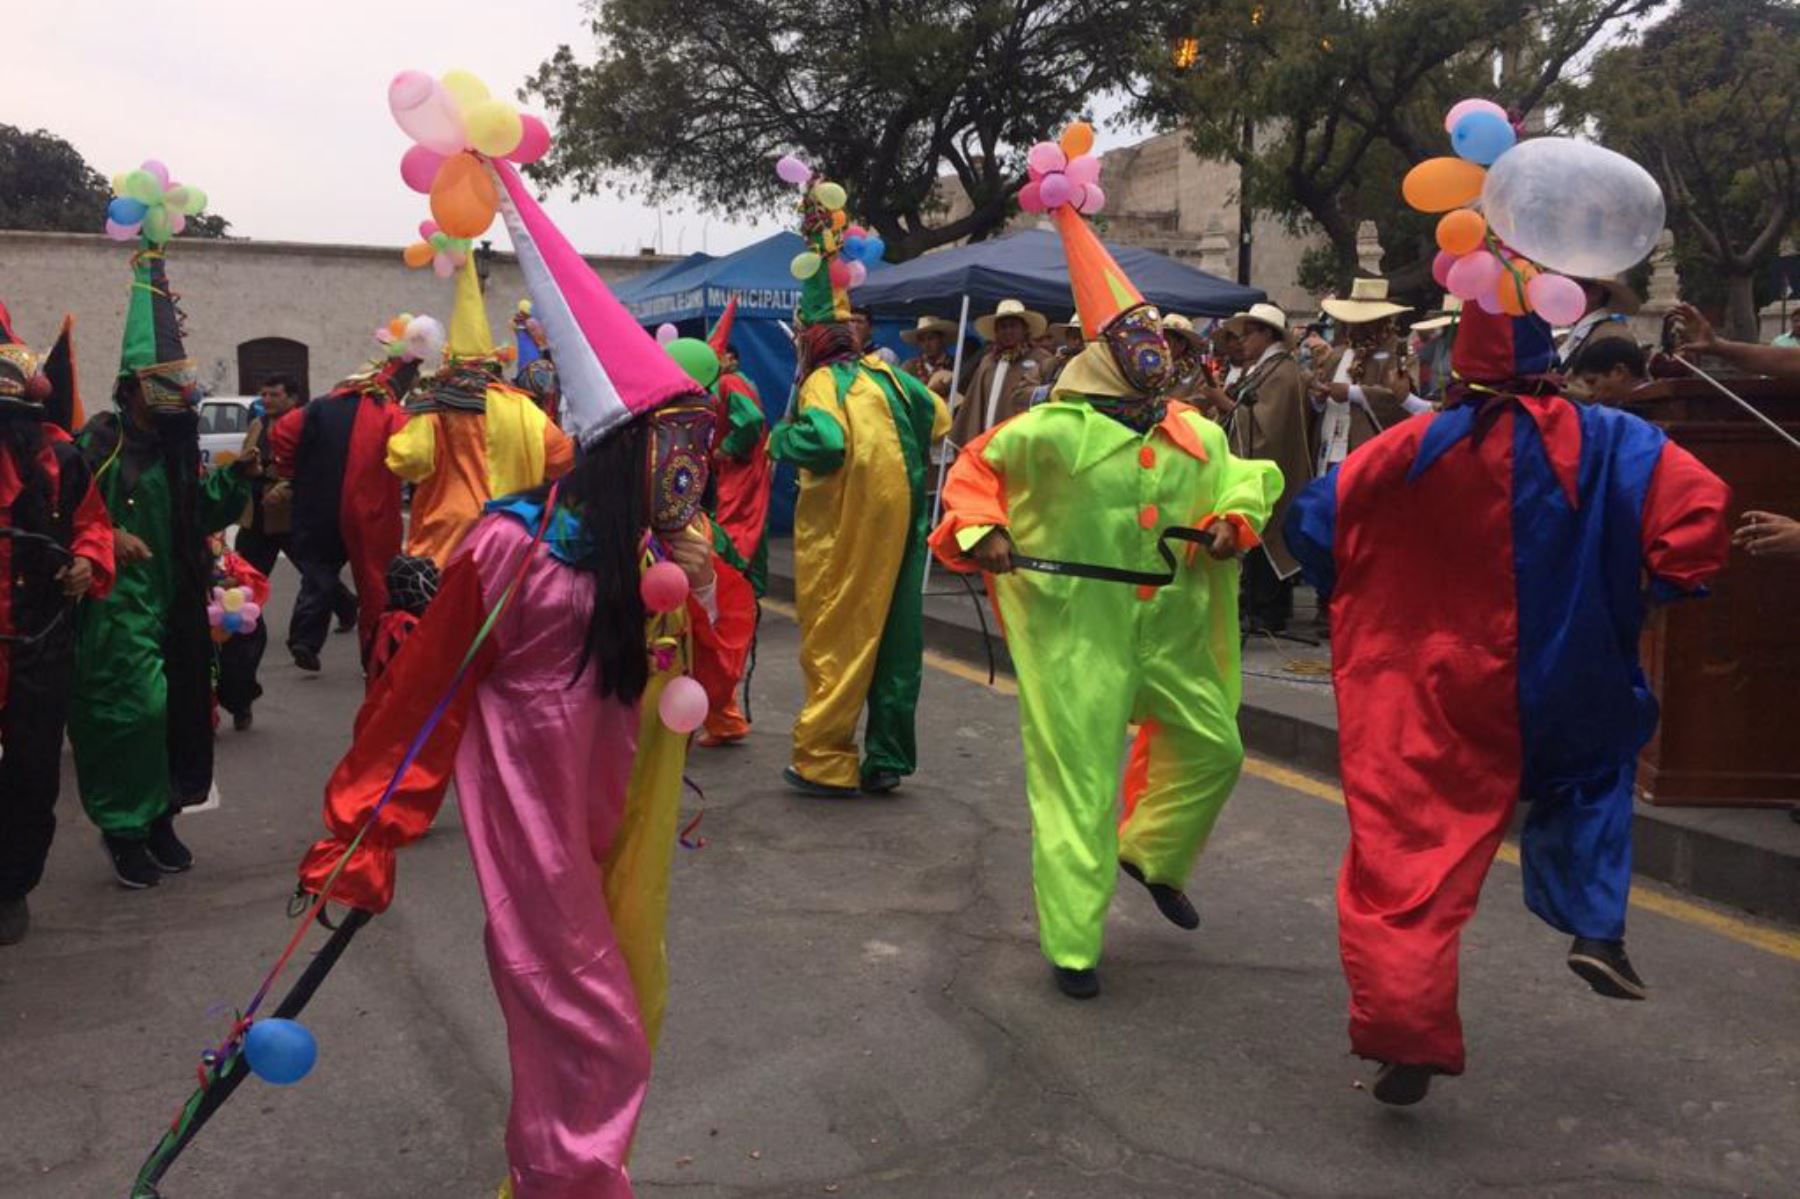 Los arlequines o mojigangos volverán a tomar las calles de Cayma este domingo durante celebración de carnaval.